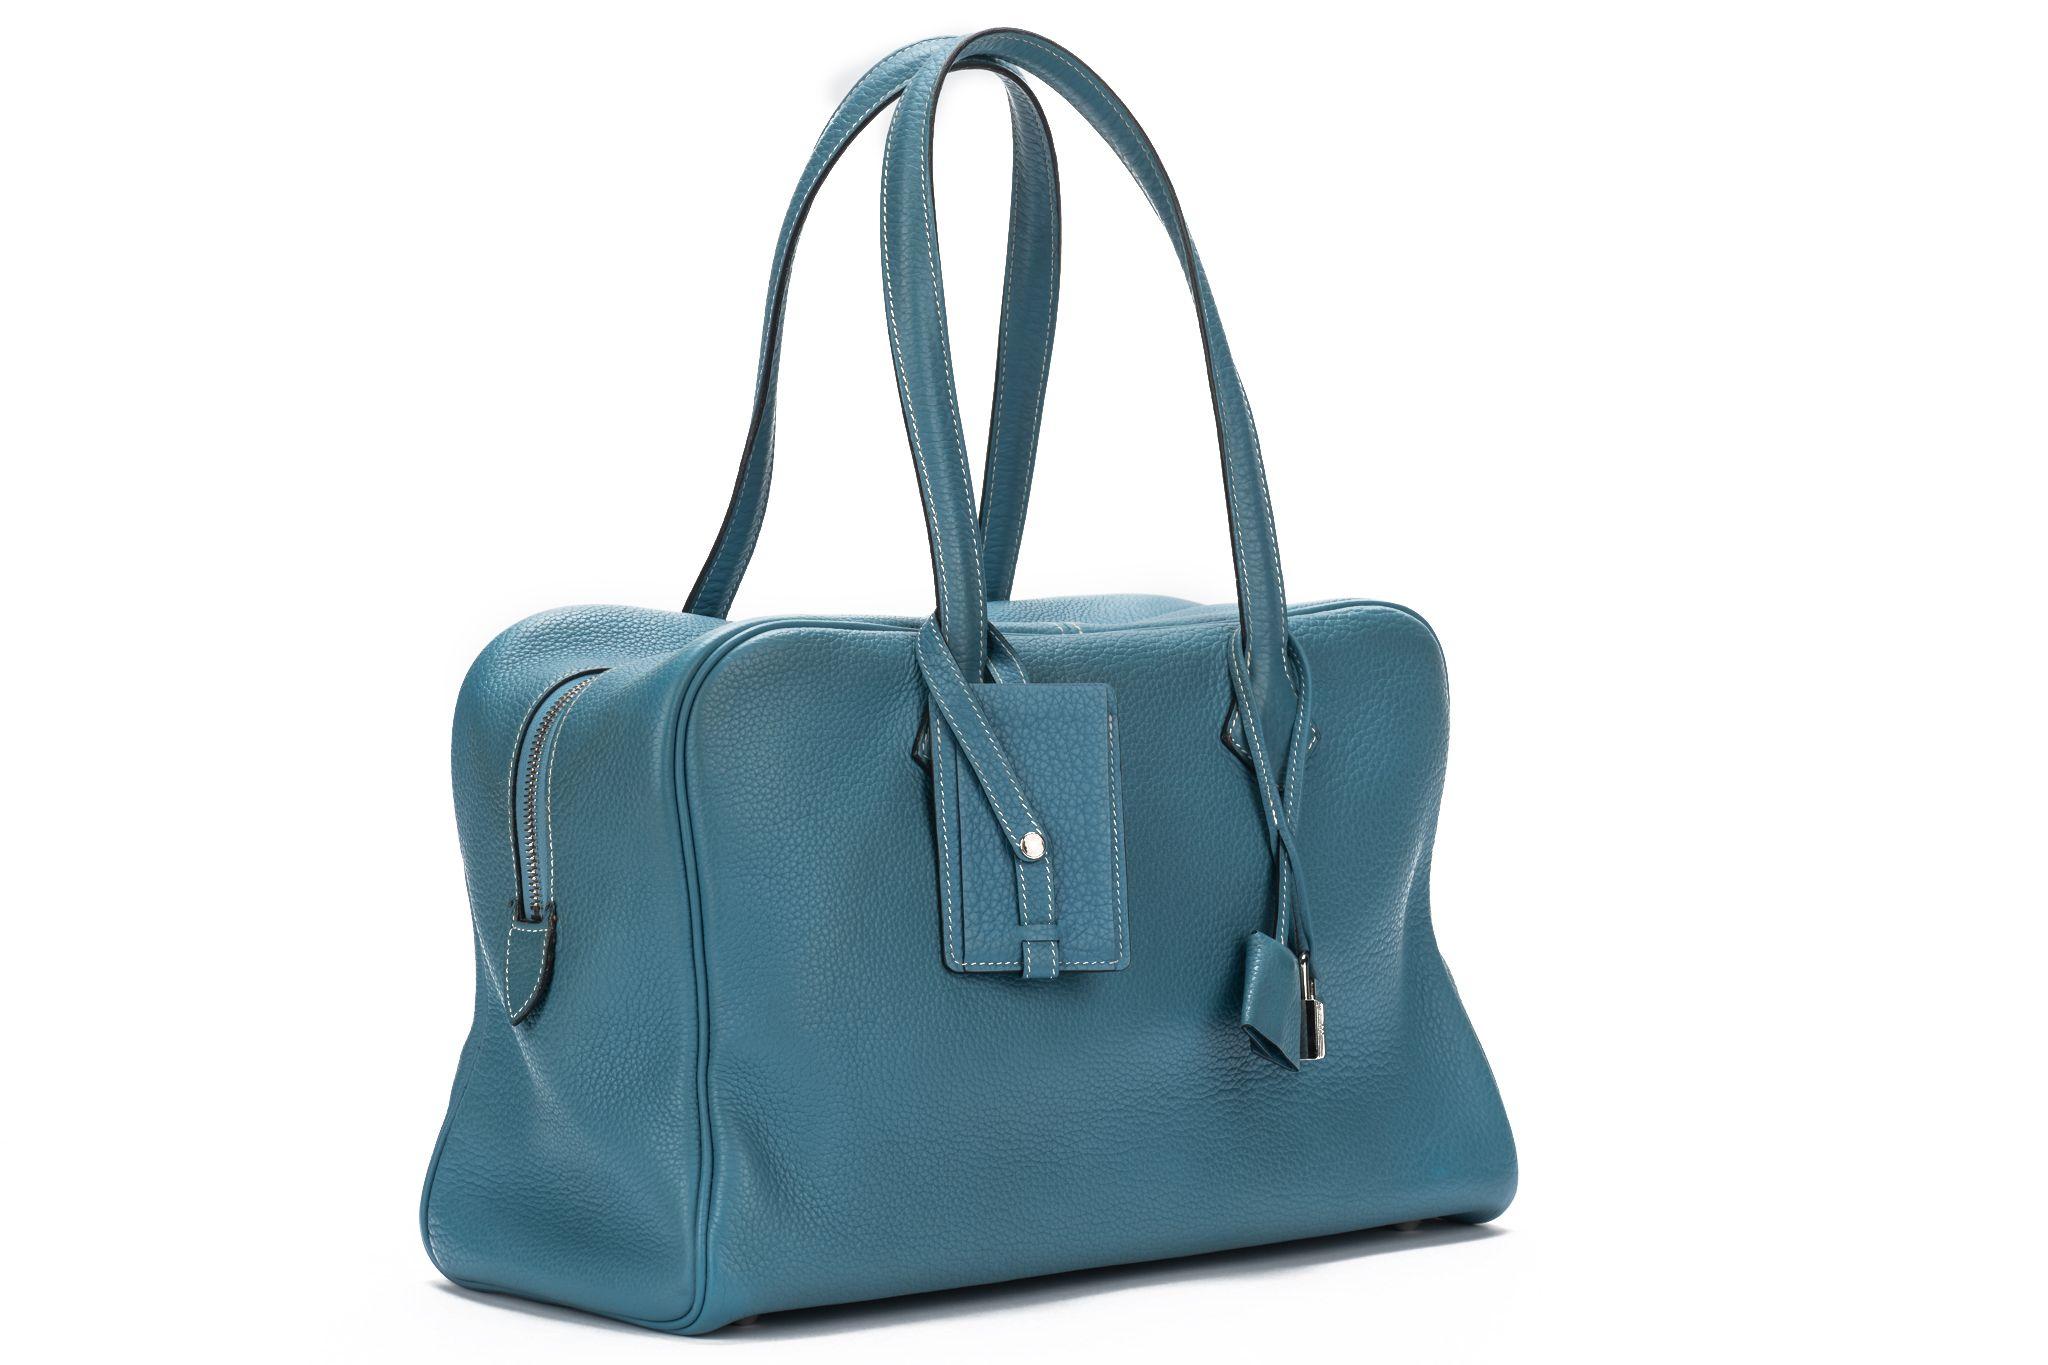 HERMÈS Victoria Handtasche aus blauem Jeans-Togo-Leder mit Metallbeschlägen in Palladium. Der doppelte Henkel (8') ermöglicht es, die Tasche in der Hand oder auf der Schulter zu tragen. Datumsstempel L. Sie wird mit dem originalen Staubbeutel